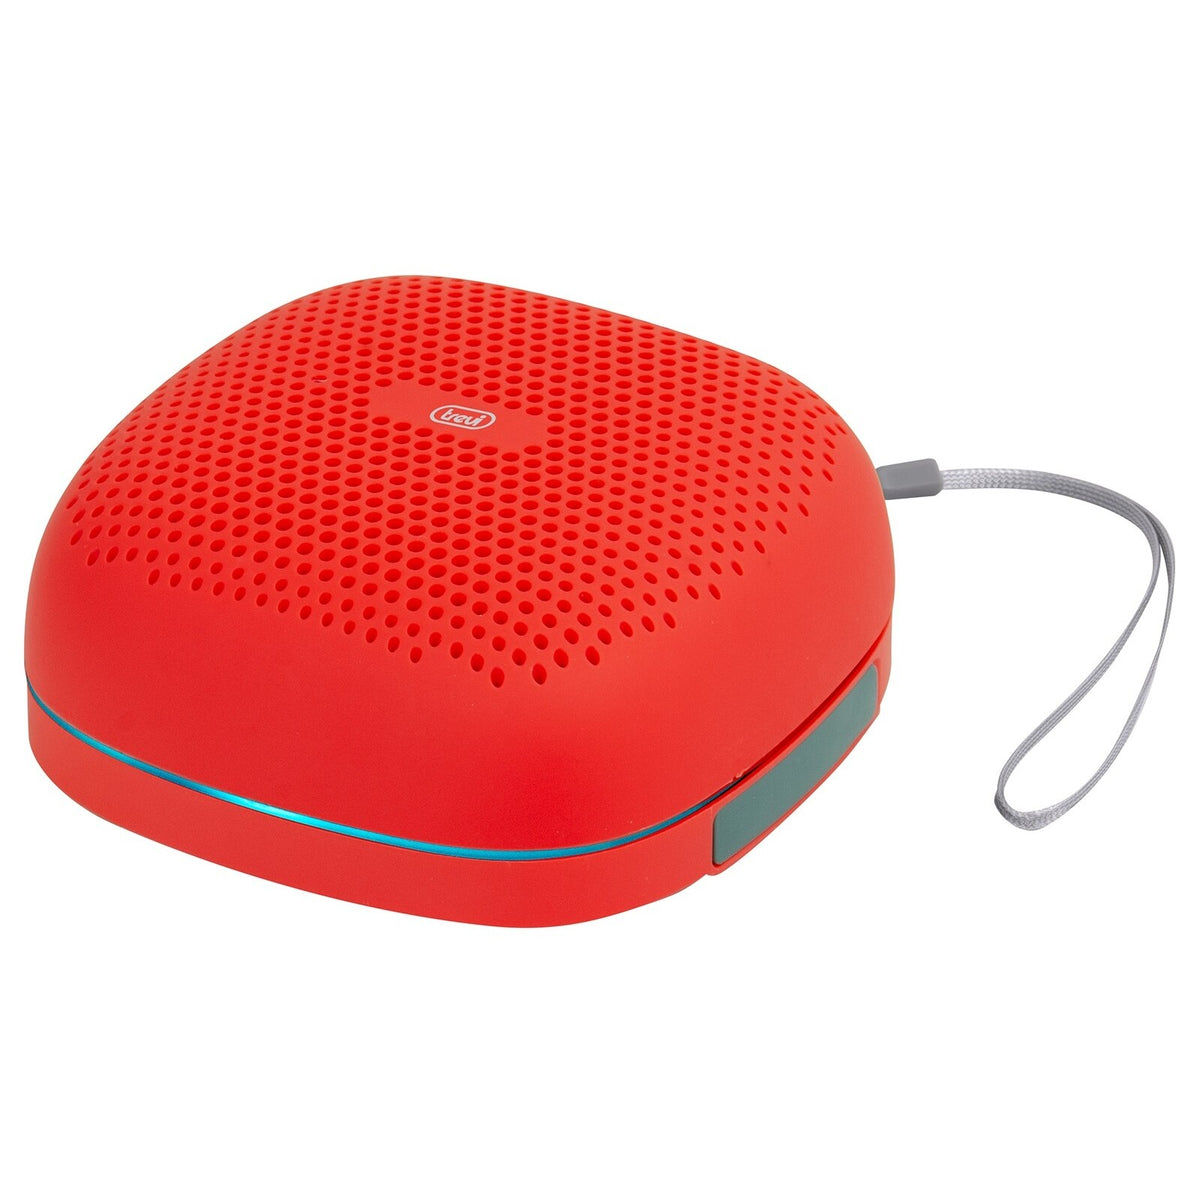 Bluetooth reproduktor Trevi XR 8A15, červený